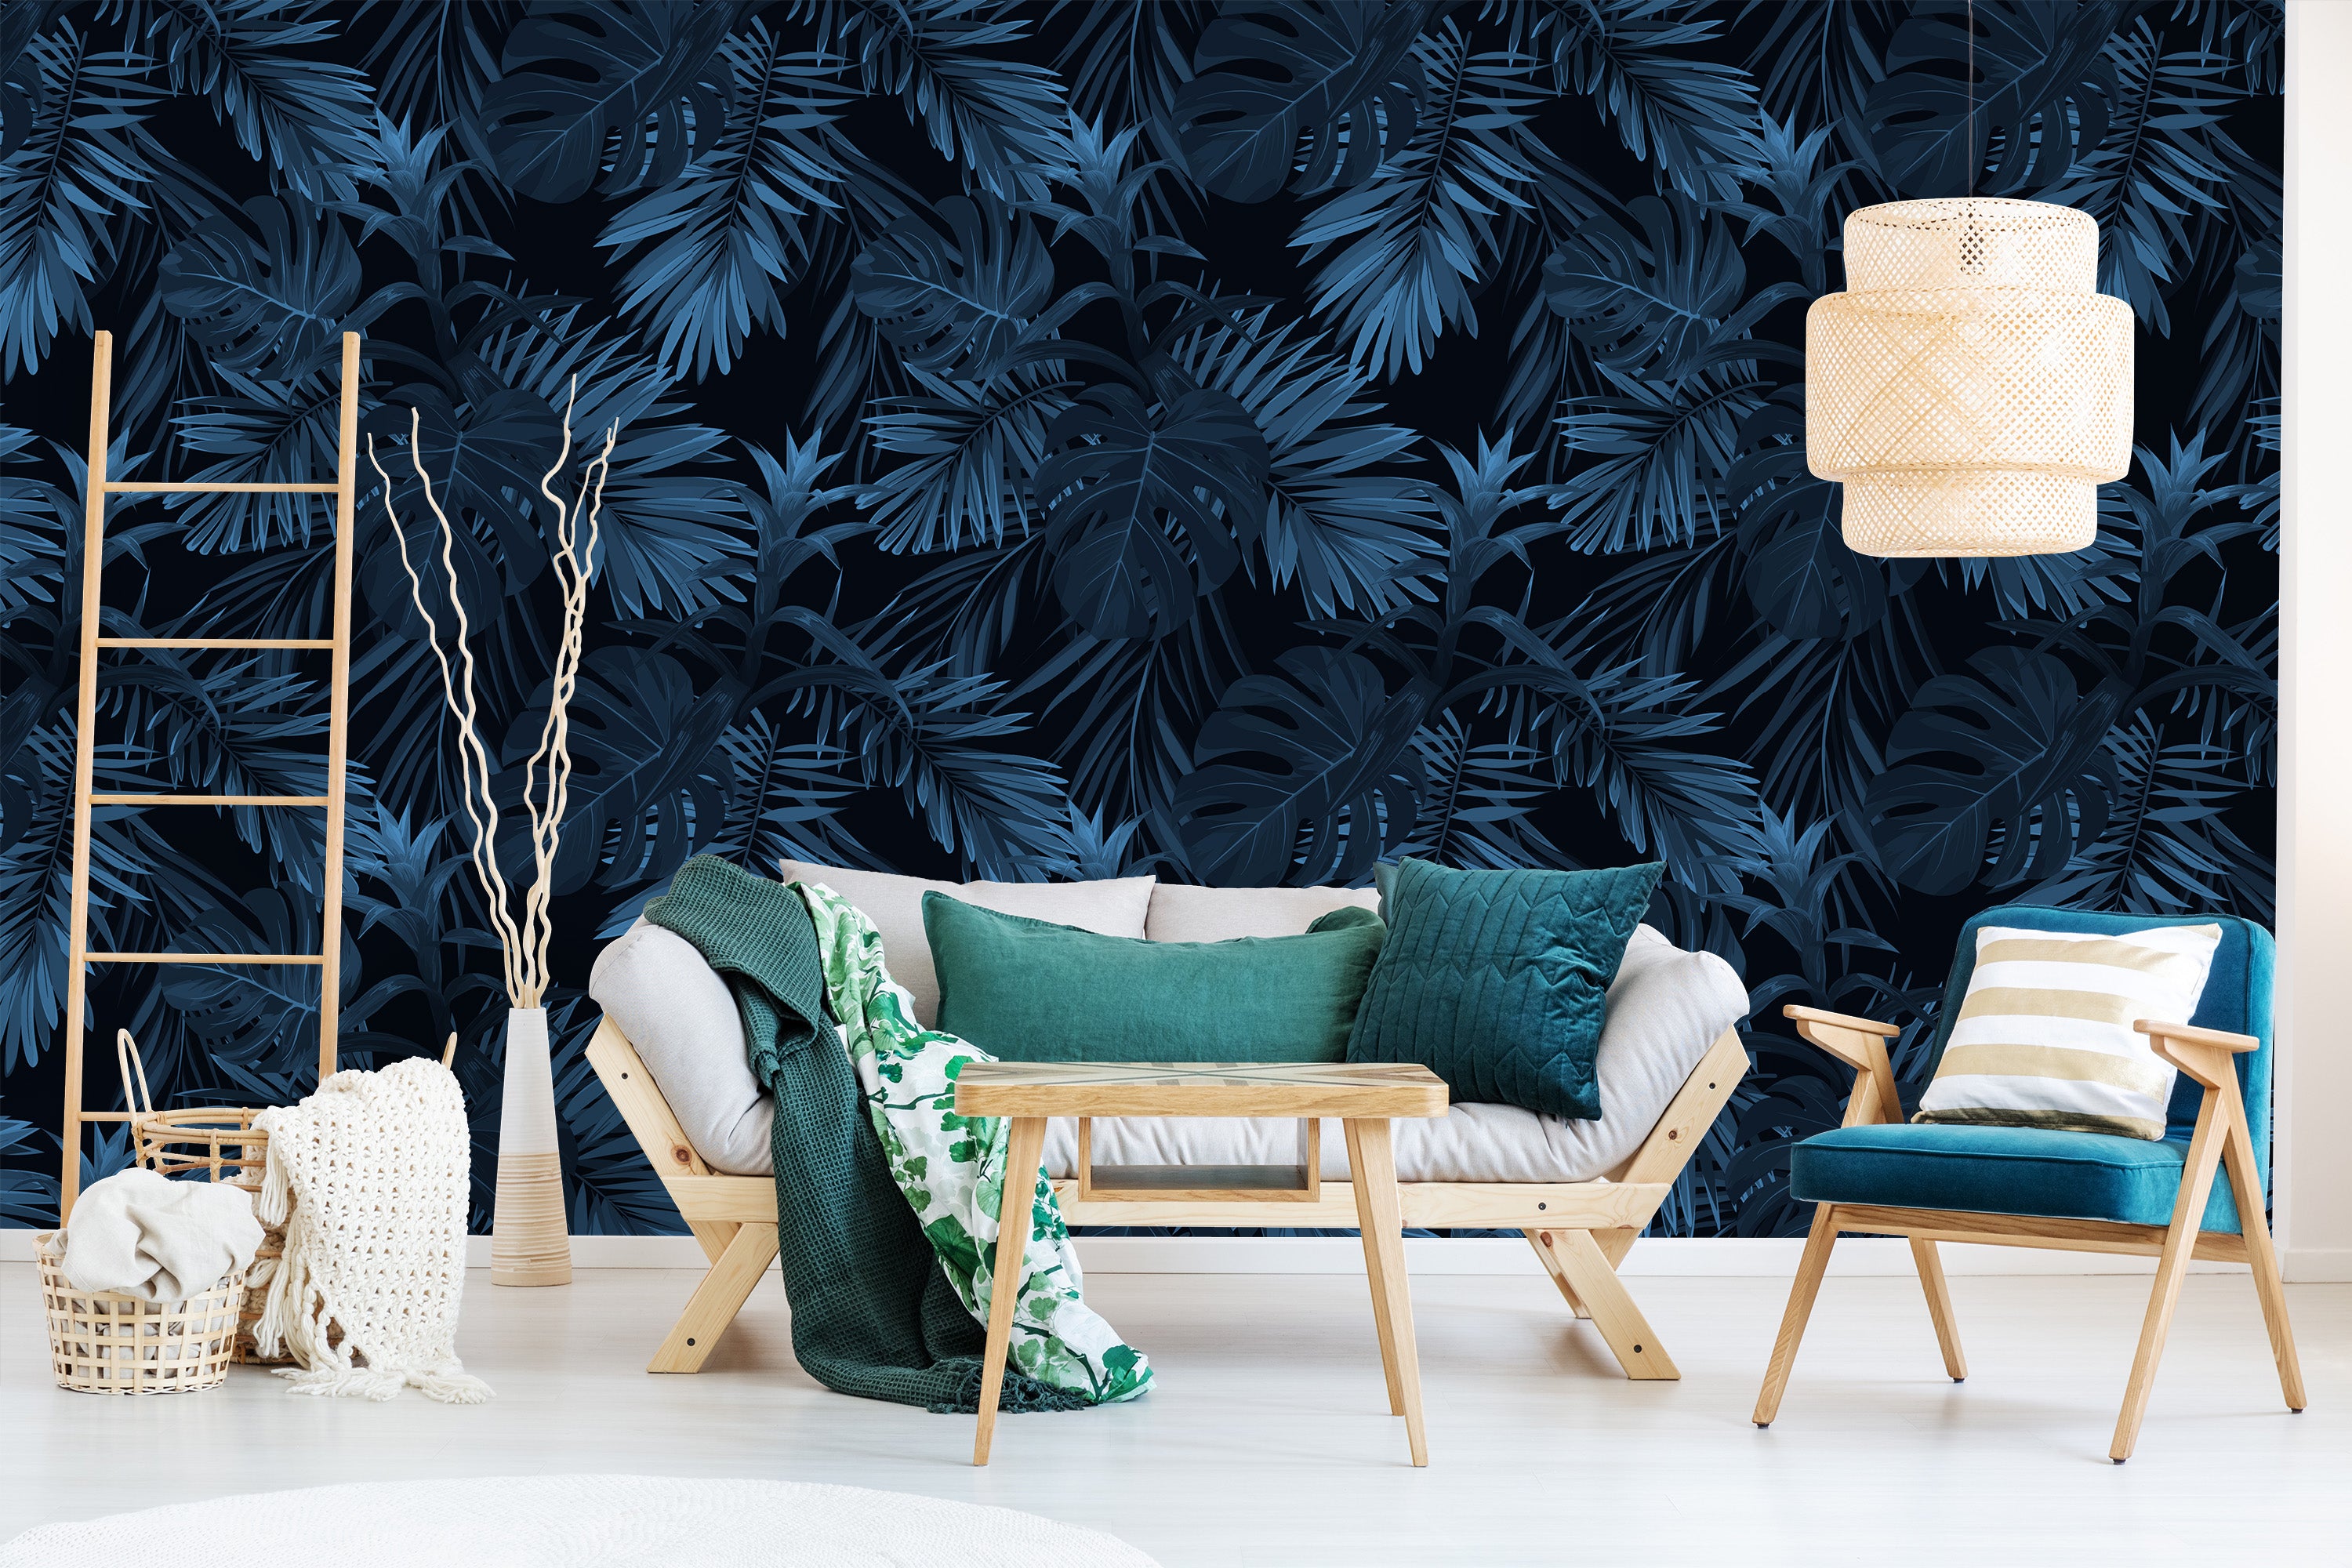 salon canape fauteuil bois papier peint motifs feuilles bleues